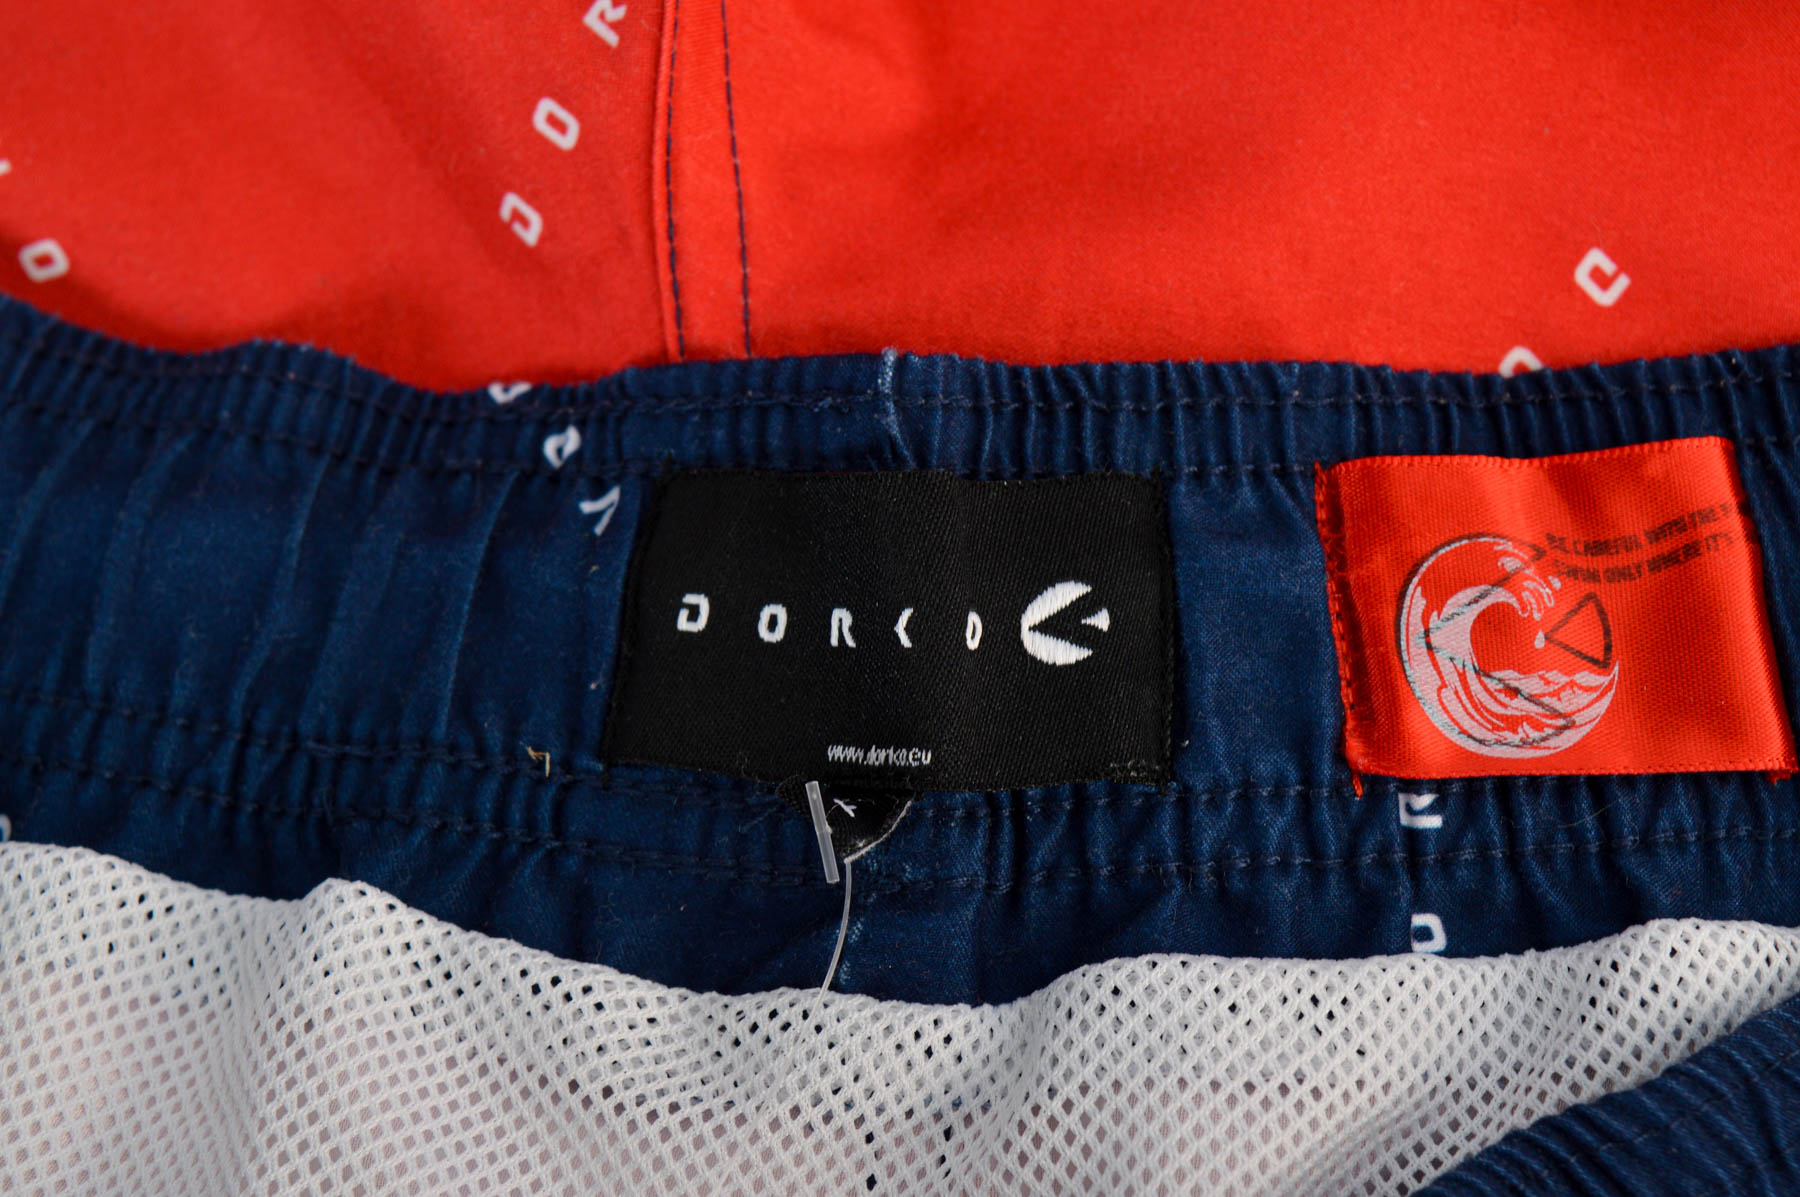 Men's shorts - Dorko - 2